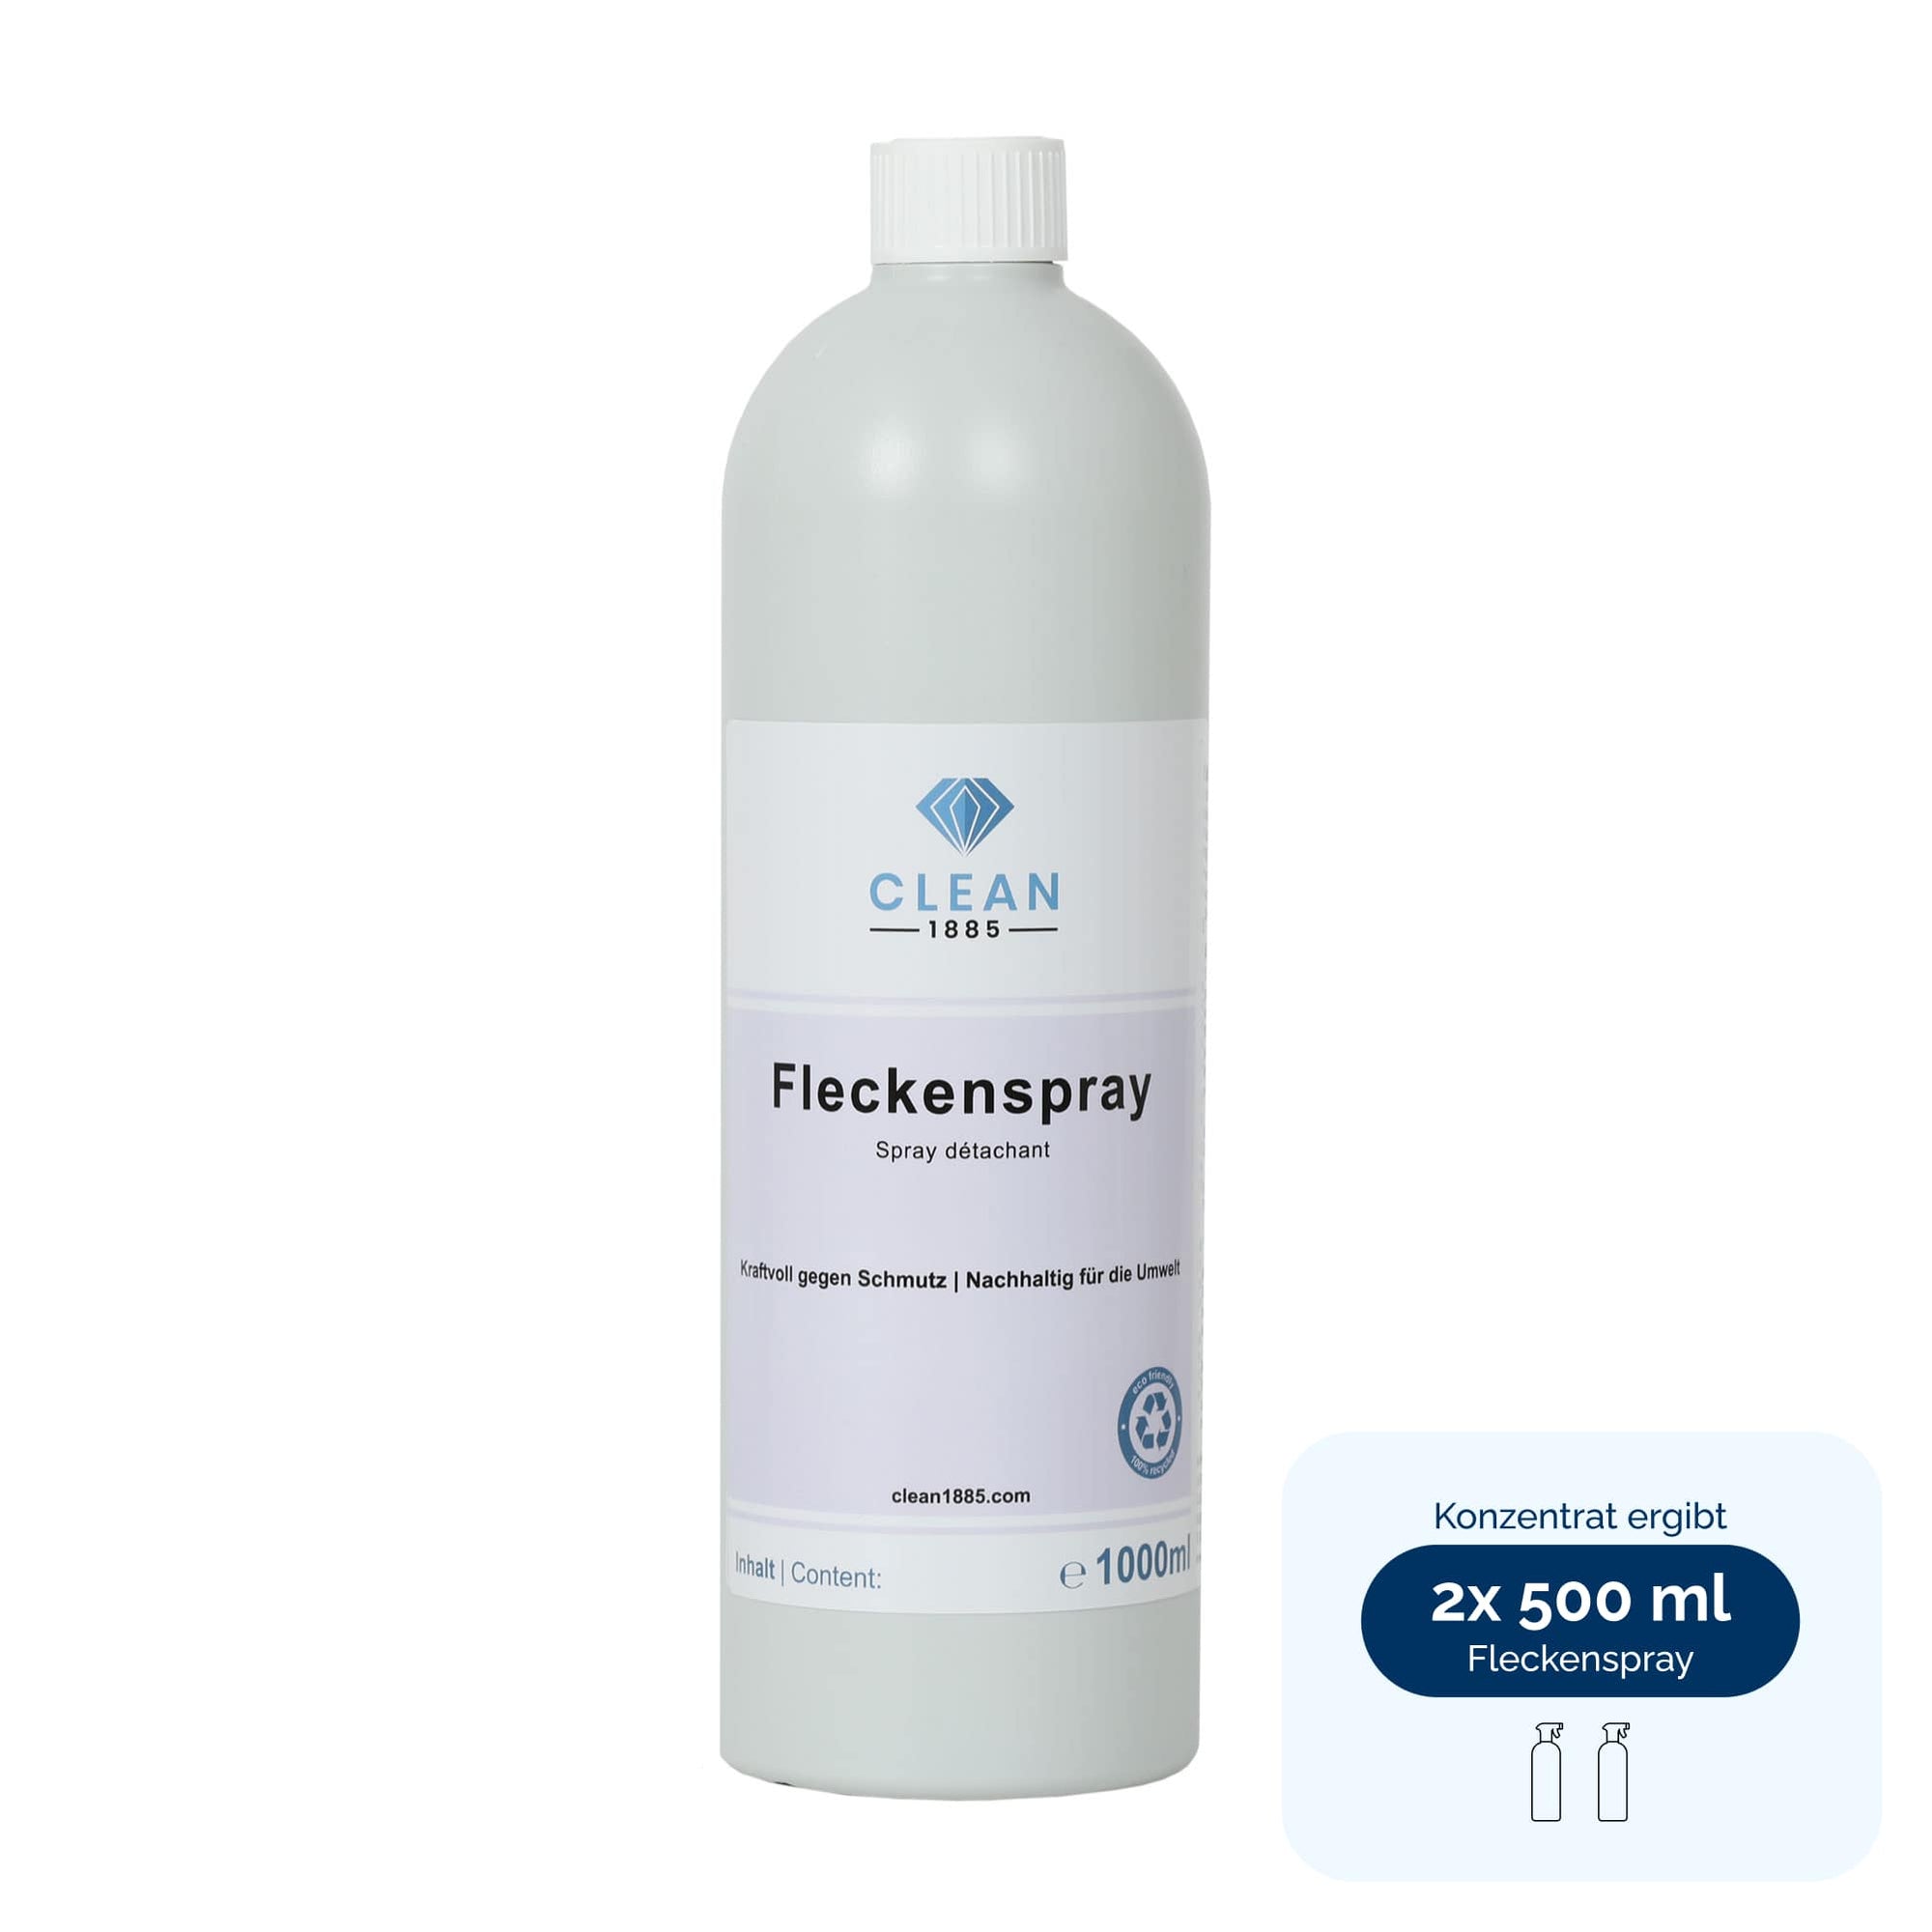 Fleckenspray - Clean1885